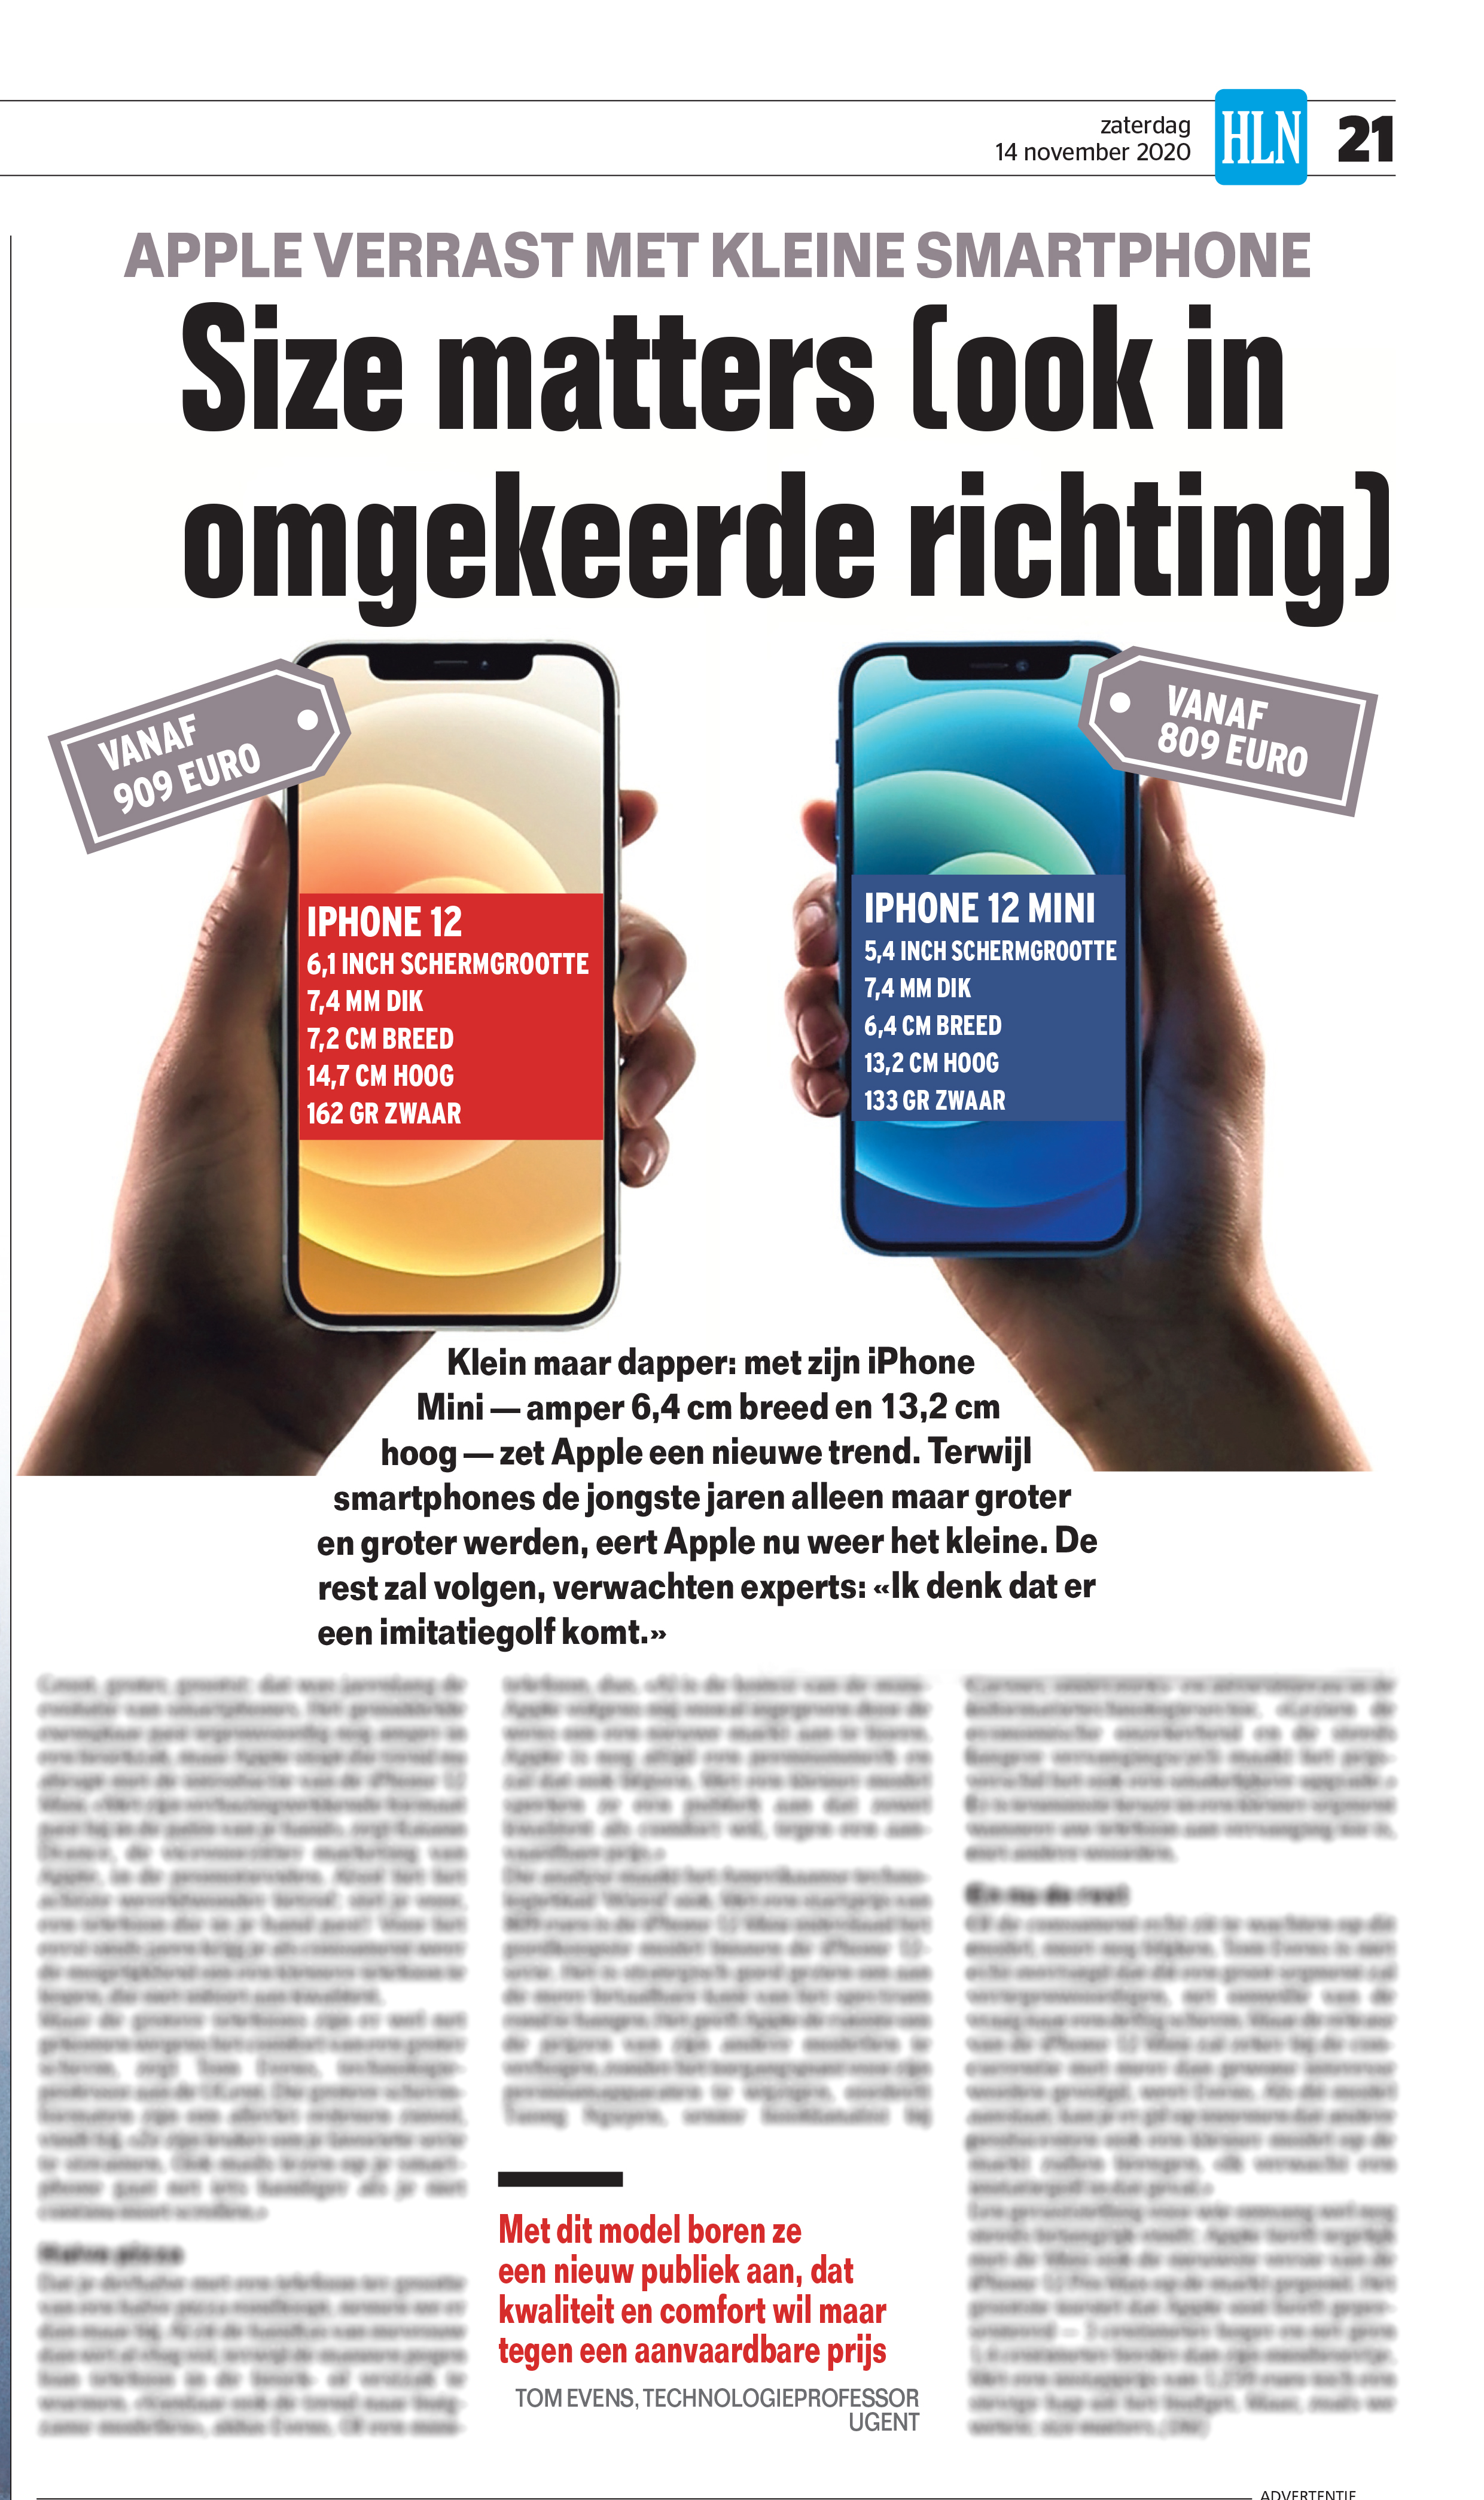 BRON: Het Nieuwsblad, 14/11/2020, p 21